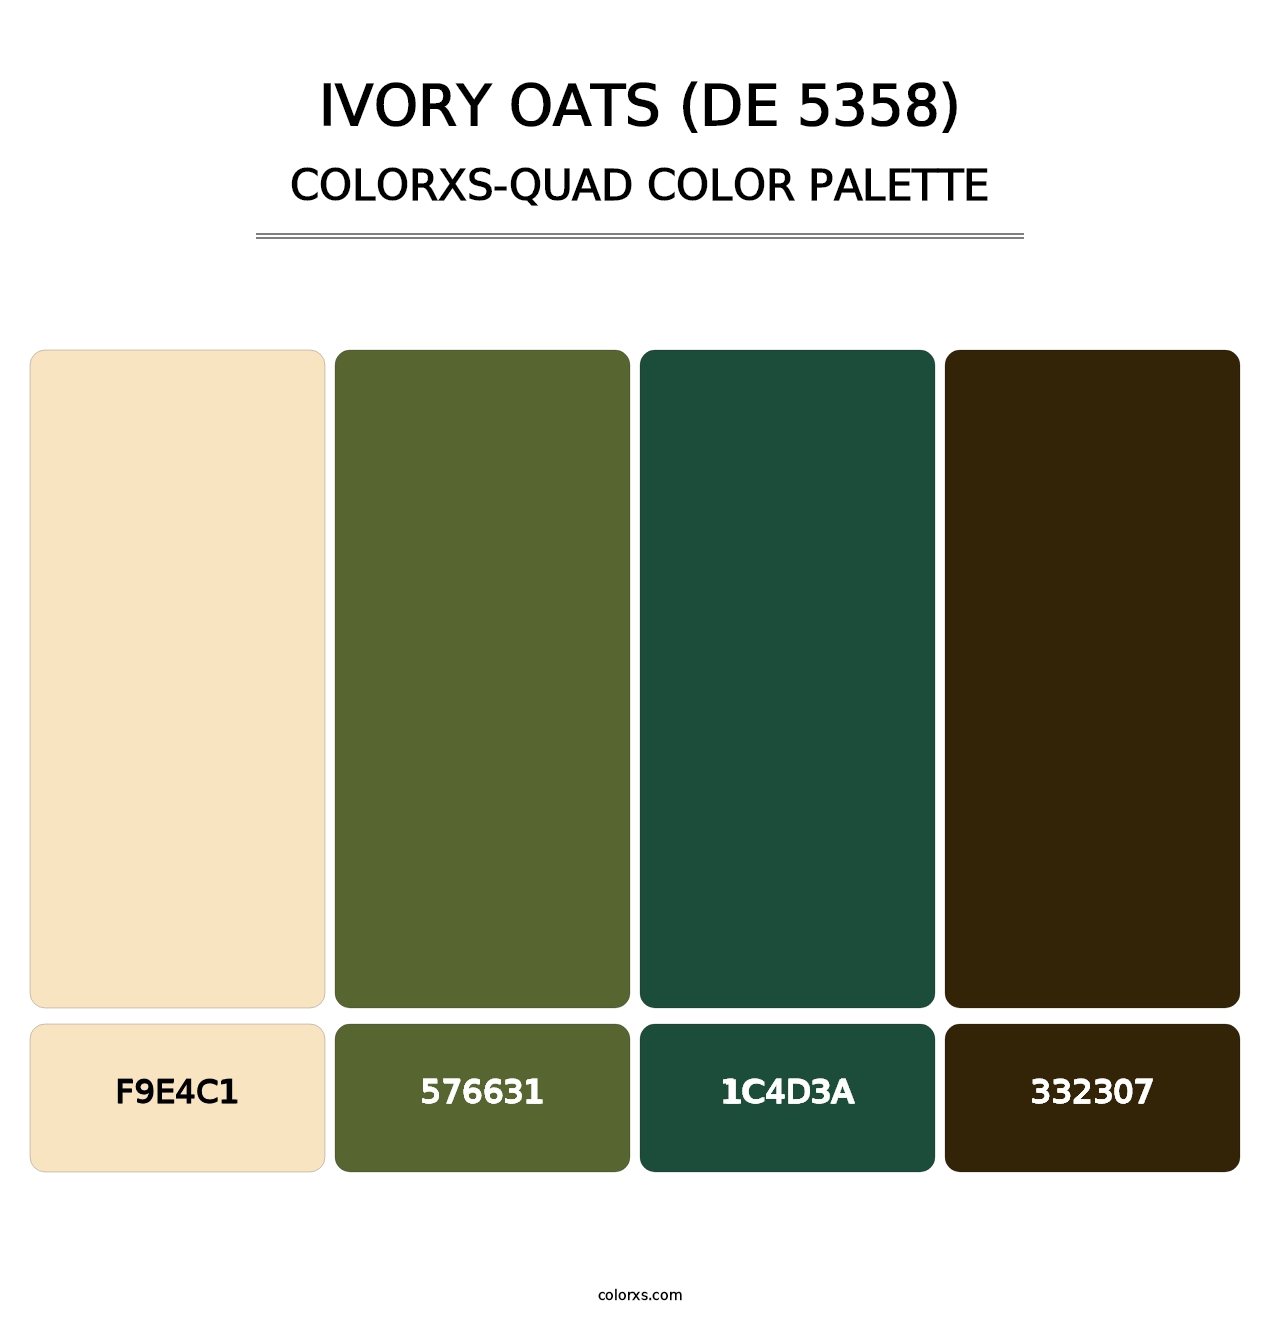 Ivory Oats (DE 5358) - Colorxs Quad Palette